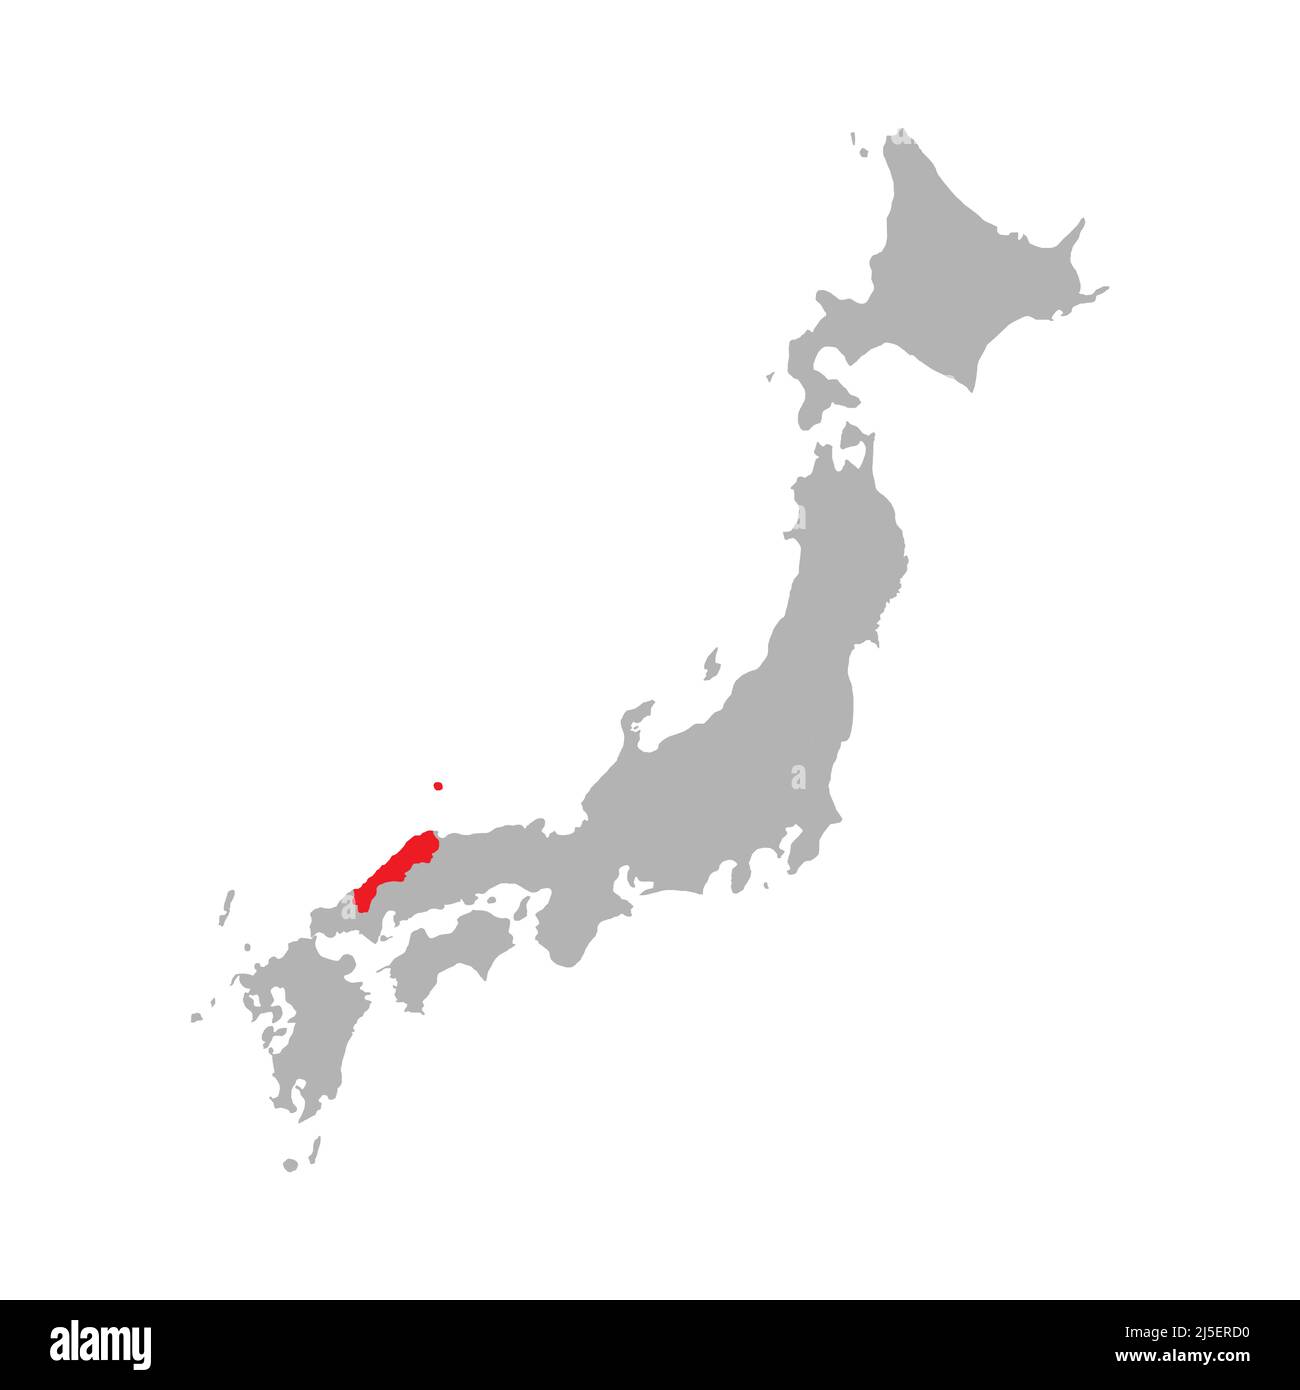 Präfektur Shimane auf der Karte Japans hervorgehoben Stock Vektor